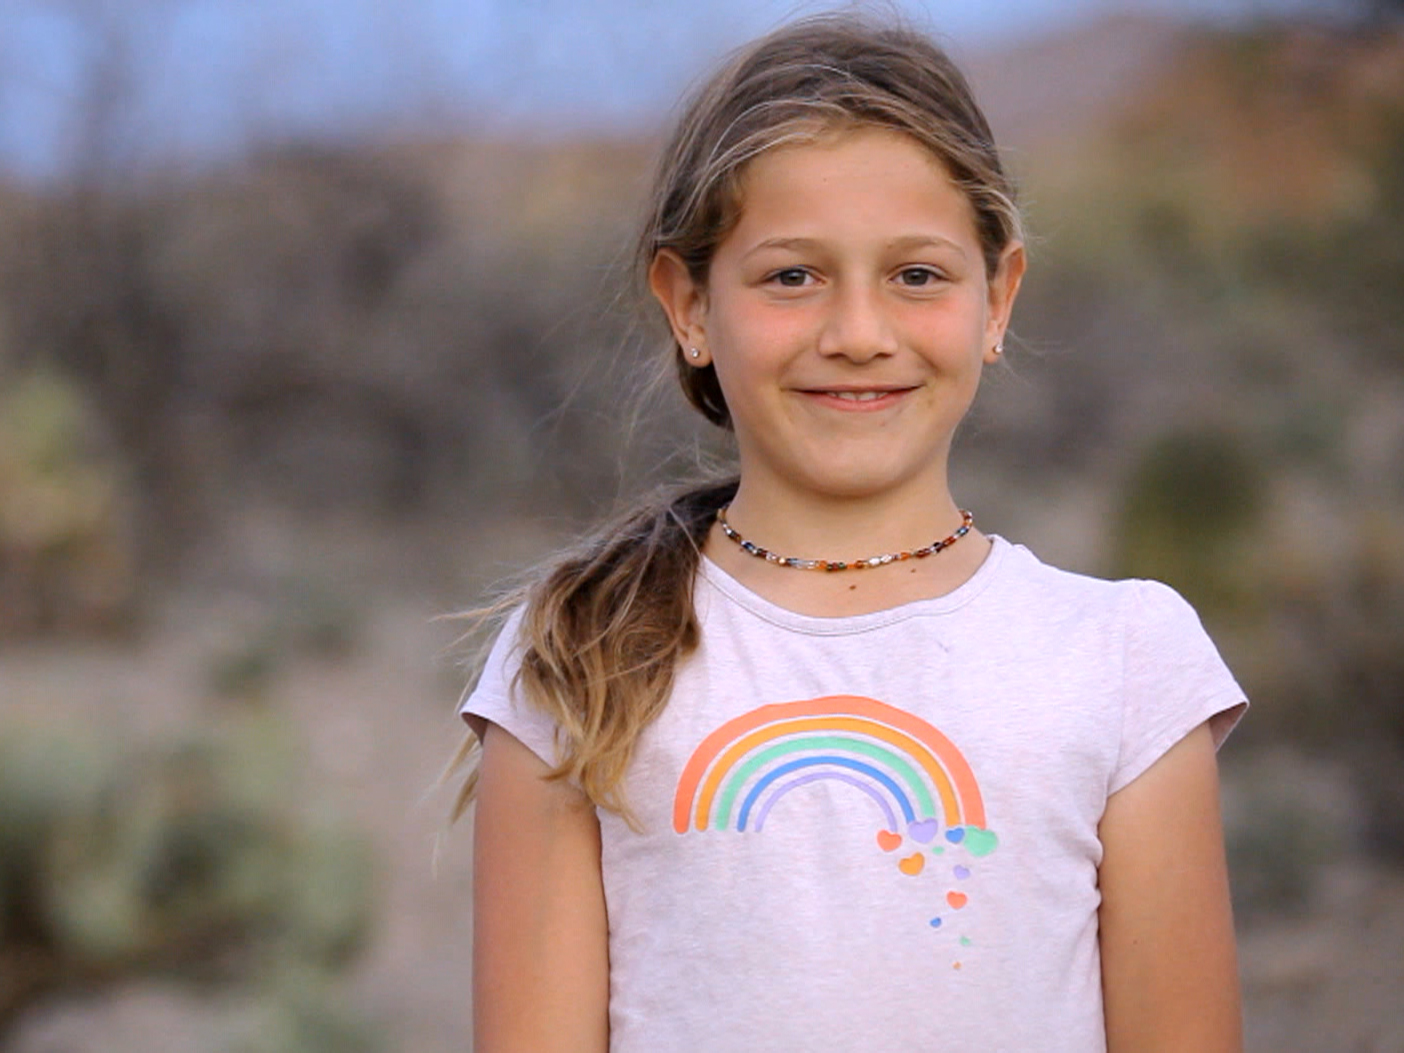 Josie Romero, an 11-year-old transgender child